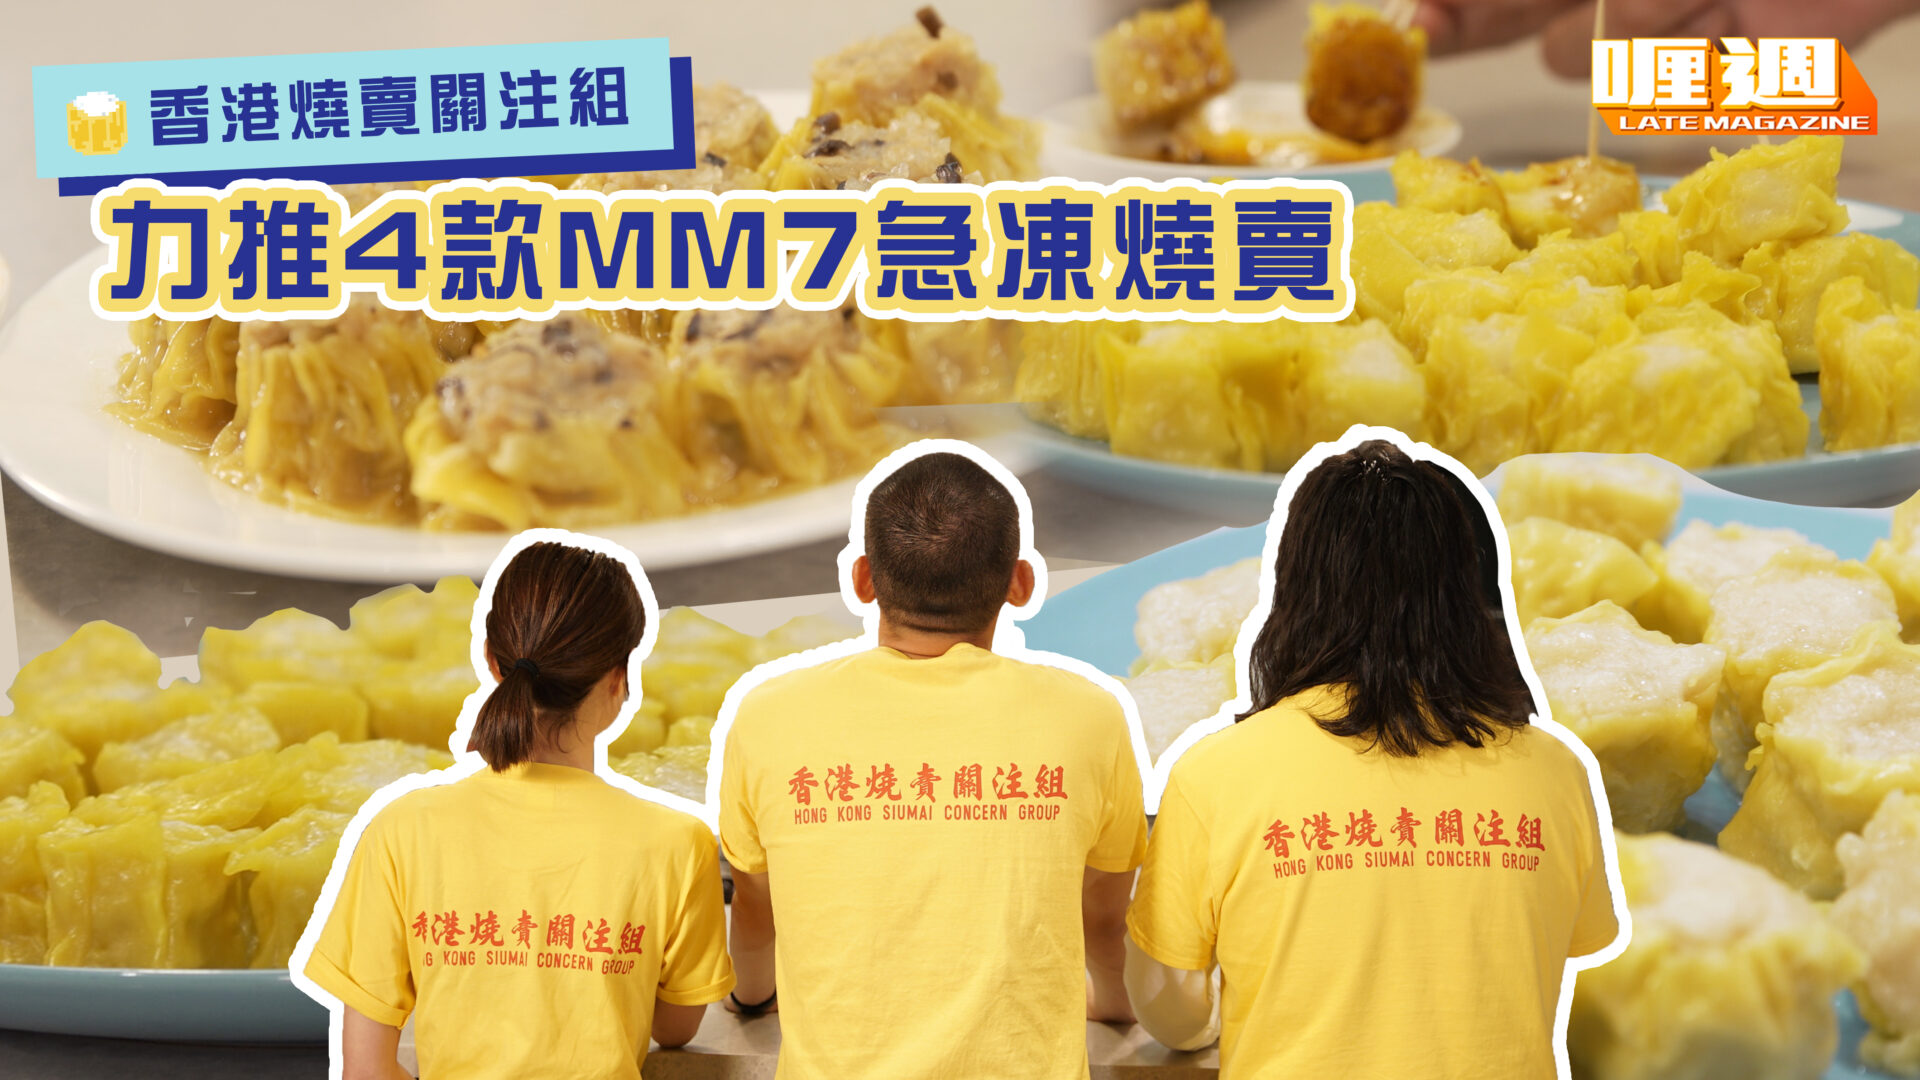 香港燒賣關注組 力推4款MM7急凍燒賣